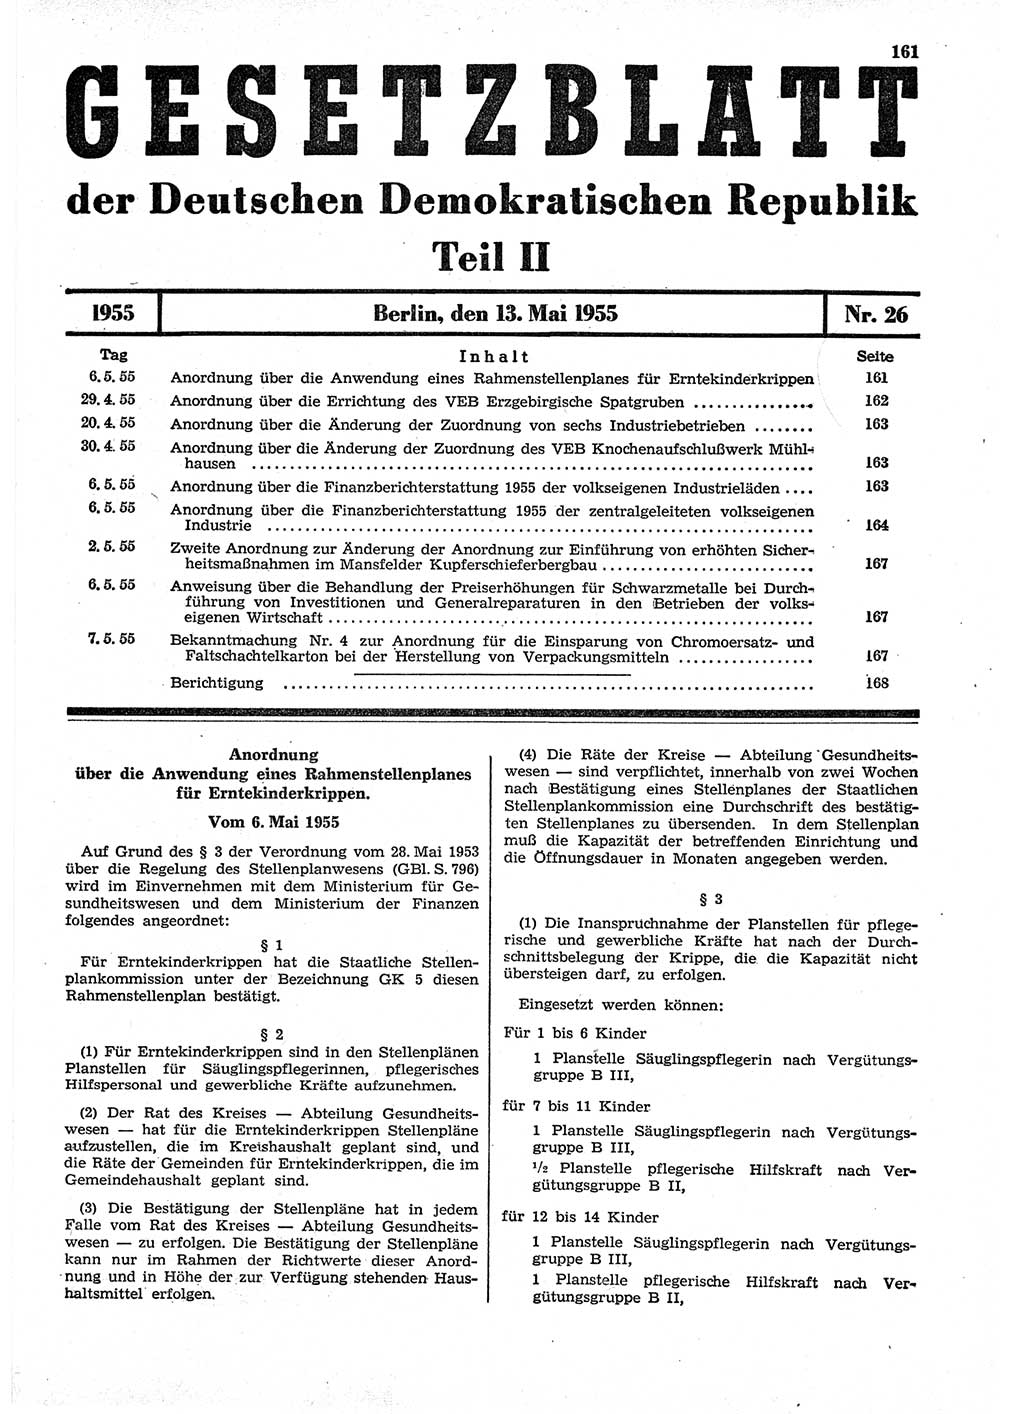 Gesetzblatt (GBl.) der Deutschen Demokratischen Republik (DDR) Teil ⅠⅠ 1955, Seite 161 (GBl. DDR ⅠⅠ 1955, S. 161)